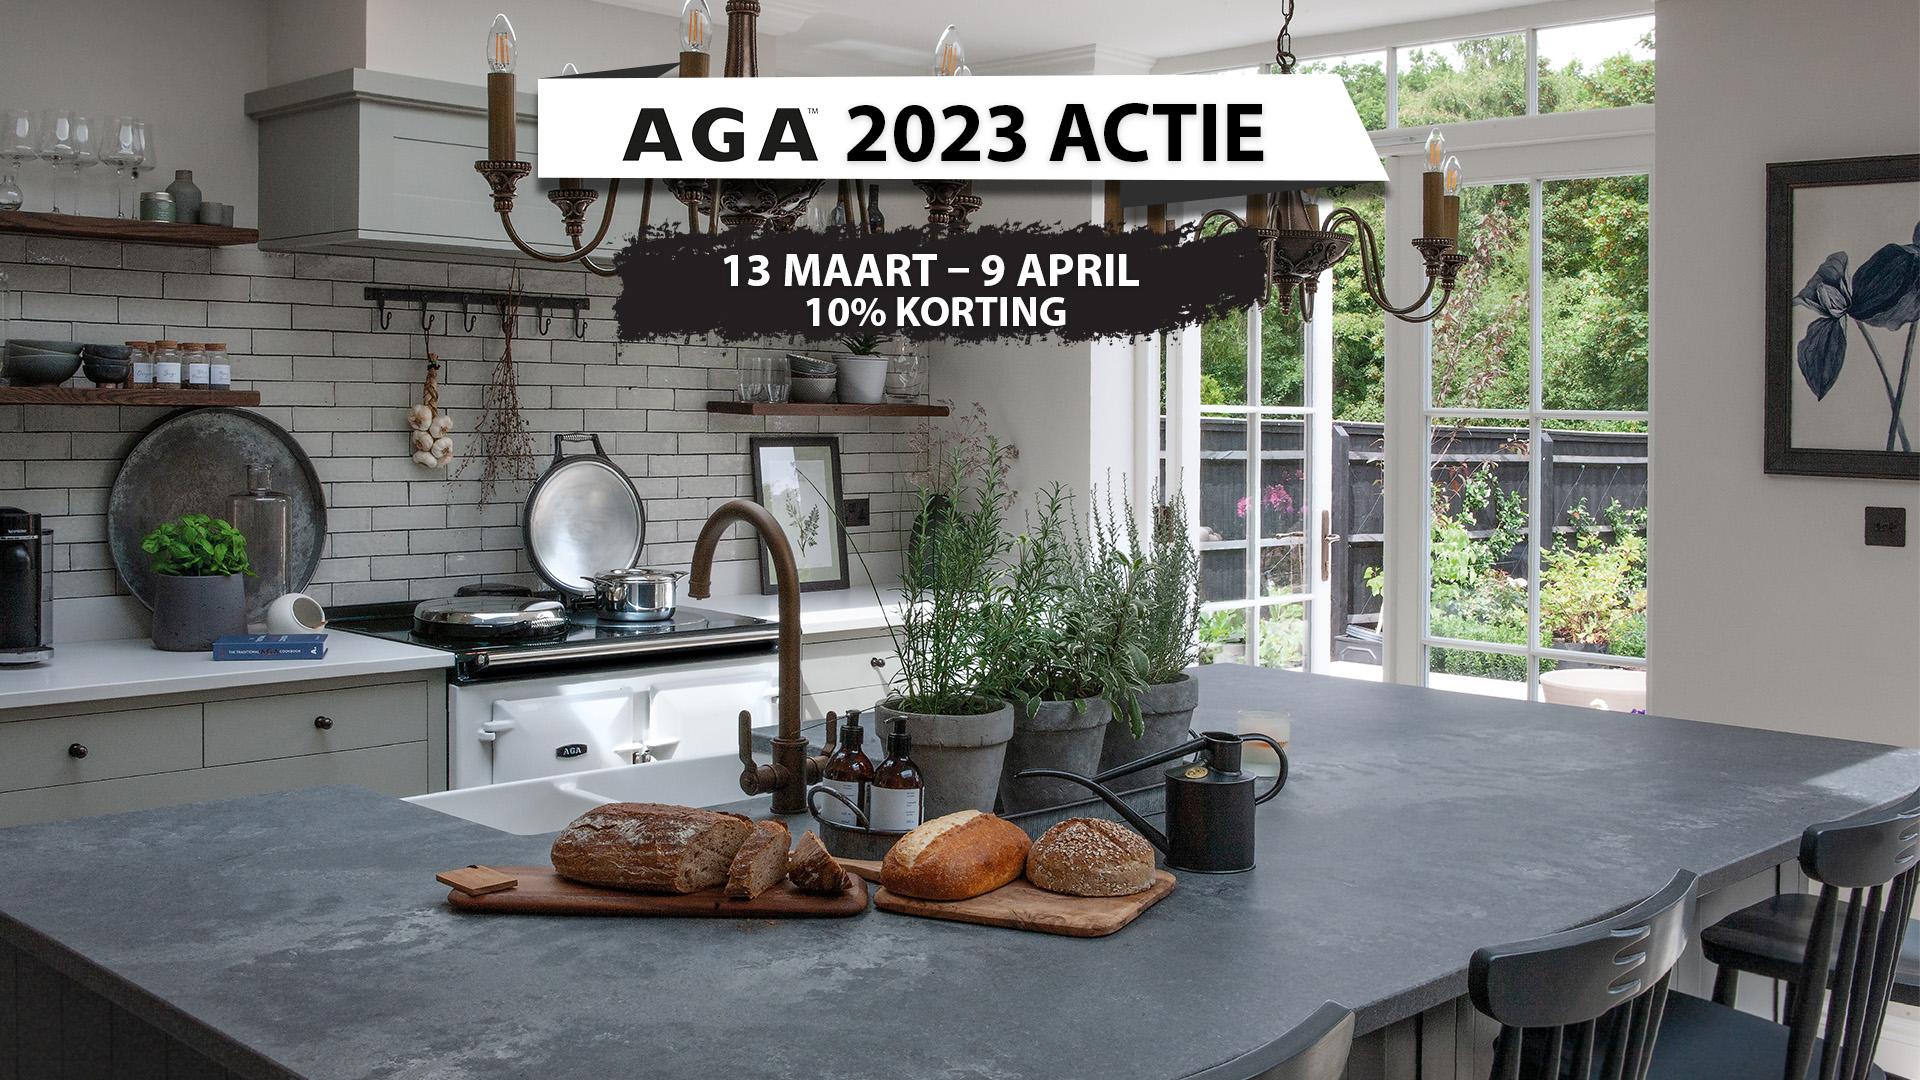 AGA 2023 Actie